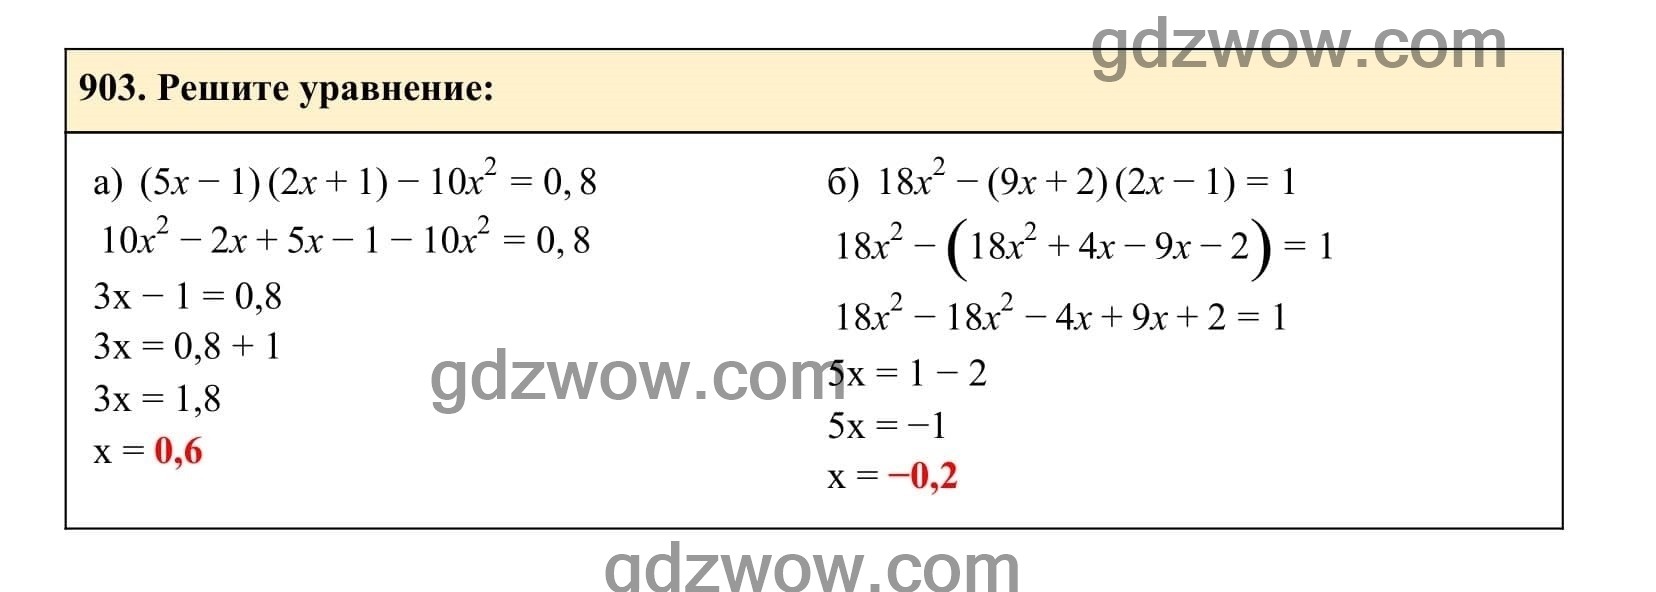 Упражнение 903 - ГДЗ по Алгебре 7 класс Учебник Макарычев (решебник) - GDZwow